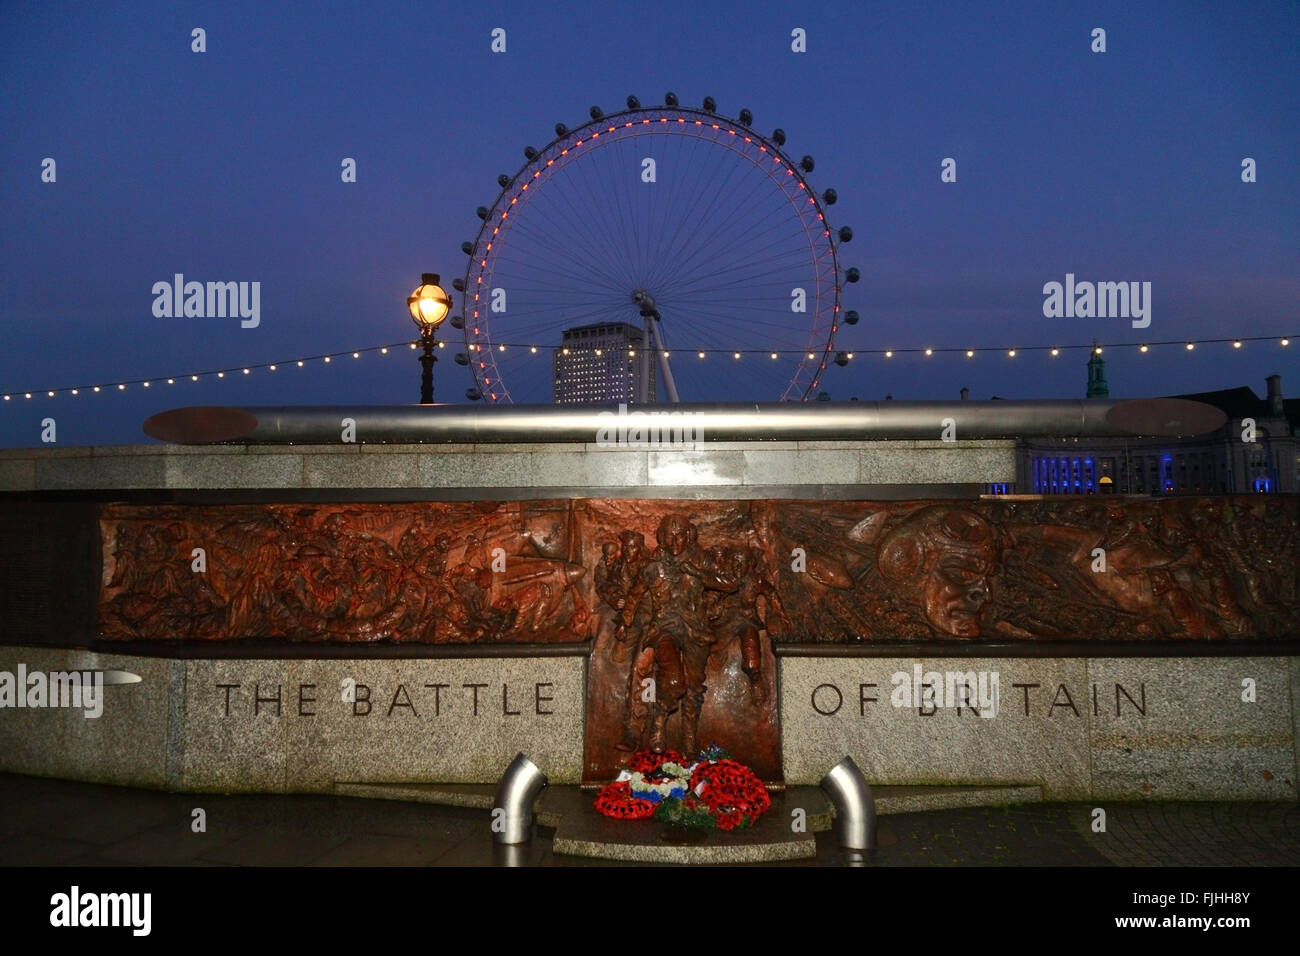 La Batalla de Gran Bretaña Monumento al atardecer, el London Eye y el Centro de Shell edificio detrás, Victoria Embankment, Londres, Inglaterra Foto de stock